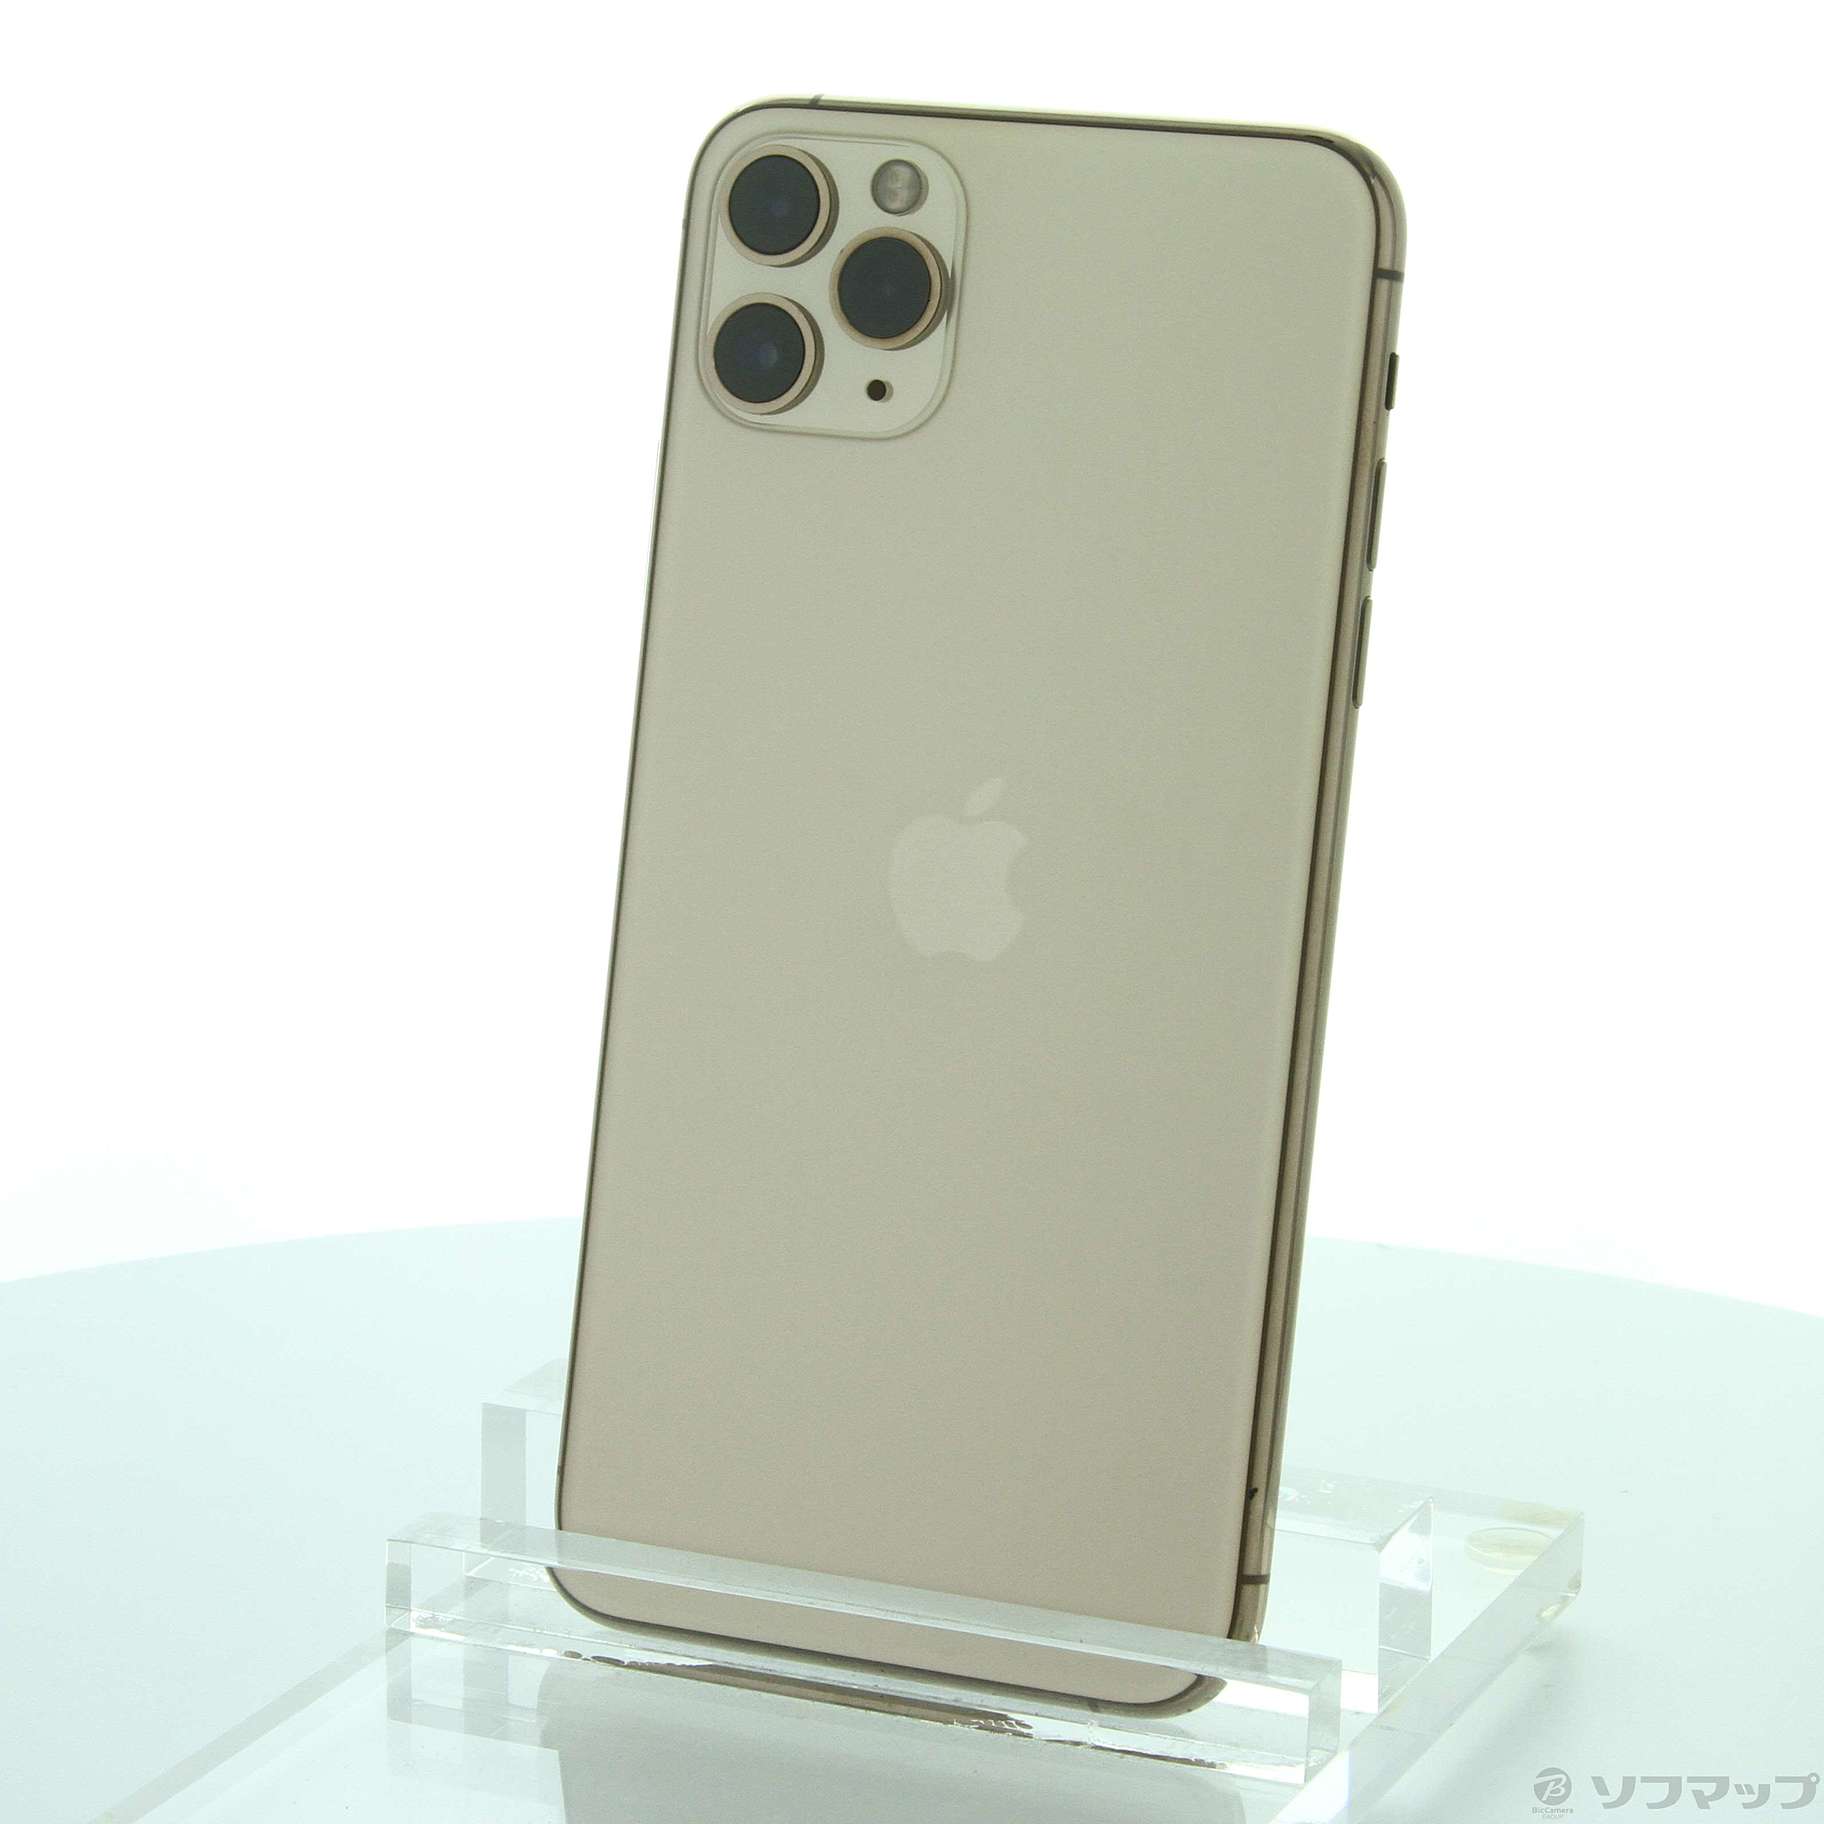 iPhone11 Pro Max 256GB ゴールド